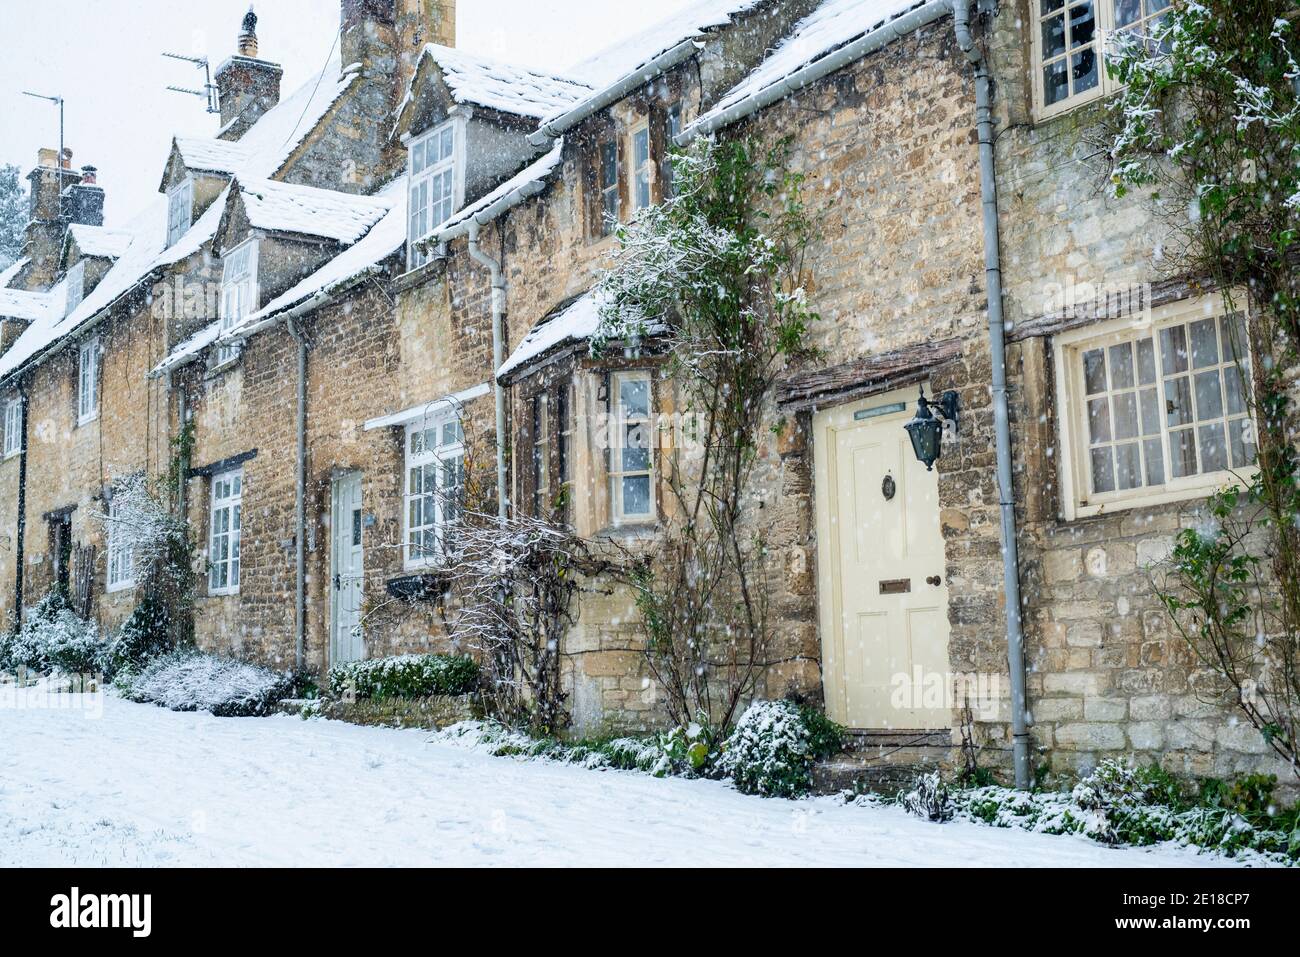 Rangée de Cotswold Stone Cottages sur Burford Hill dans la neige de décembre. Burford, Cotswolds, Oxfordshire, Angleterre Banque D'Images